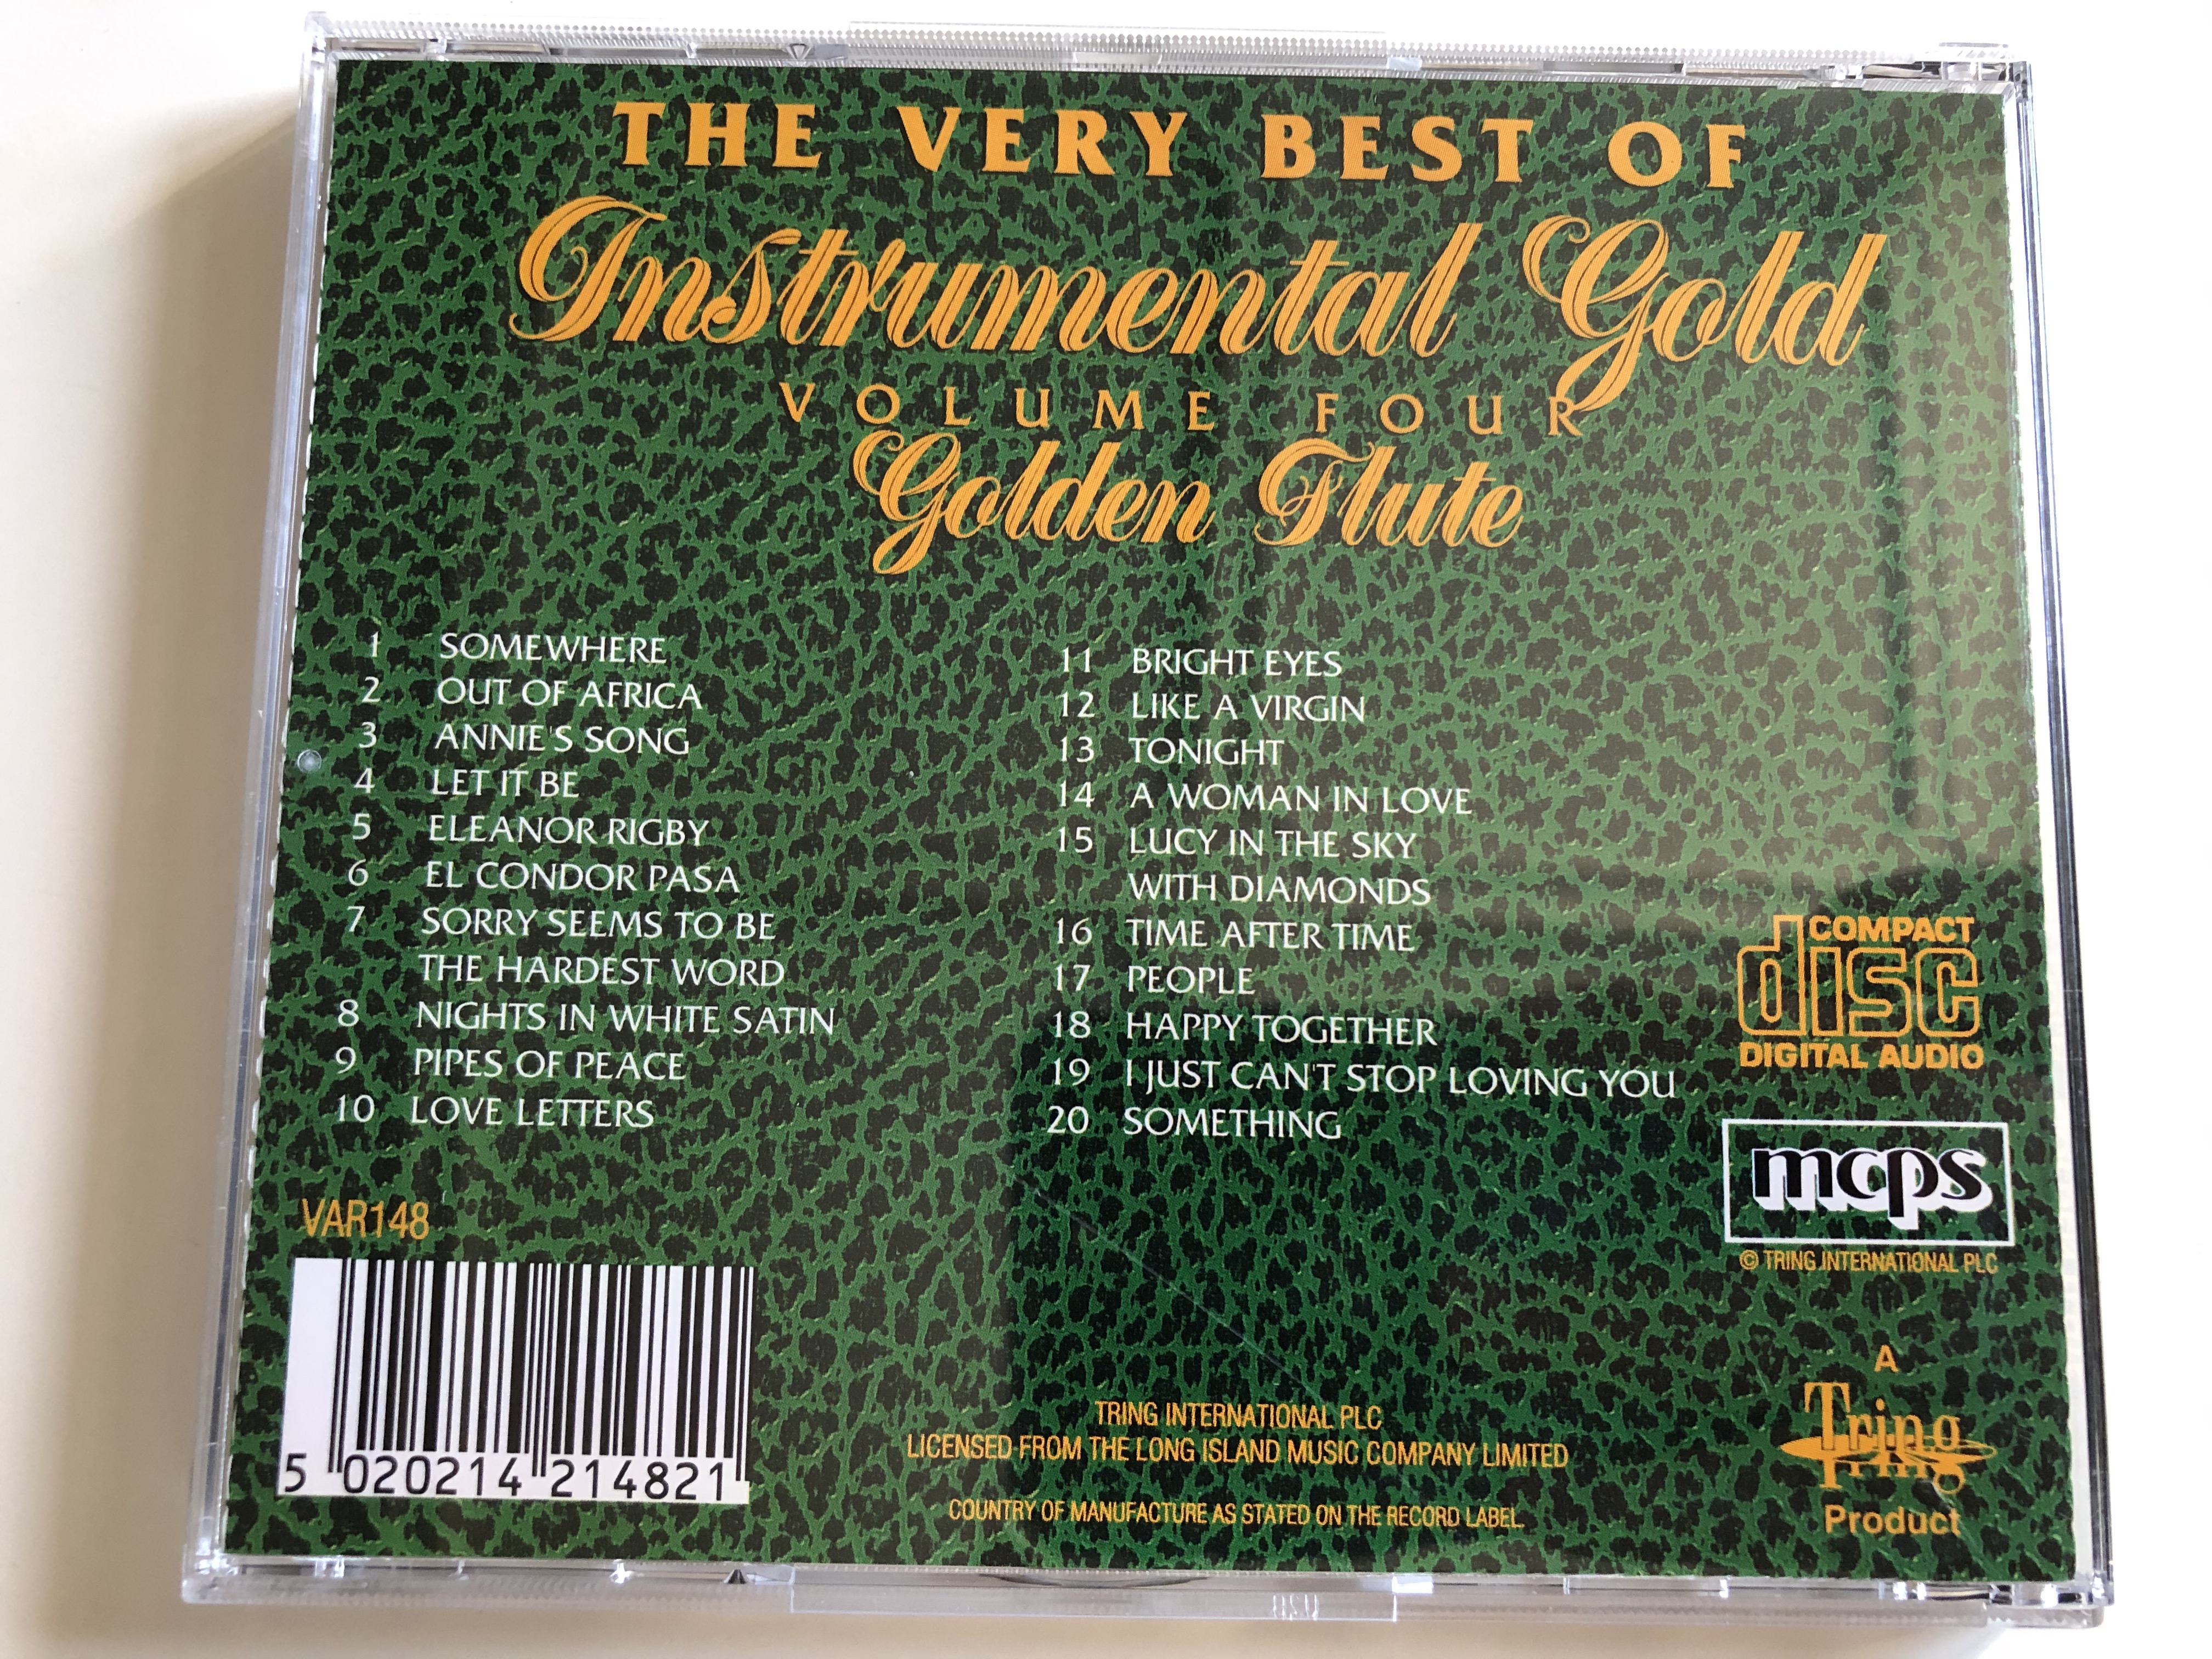 the-very-best-of-instrumental-gold-volume-four-golden-flute-tring-audio-cd-var148-4-.jpg